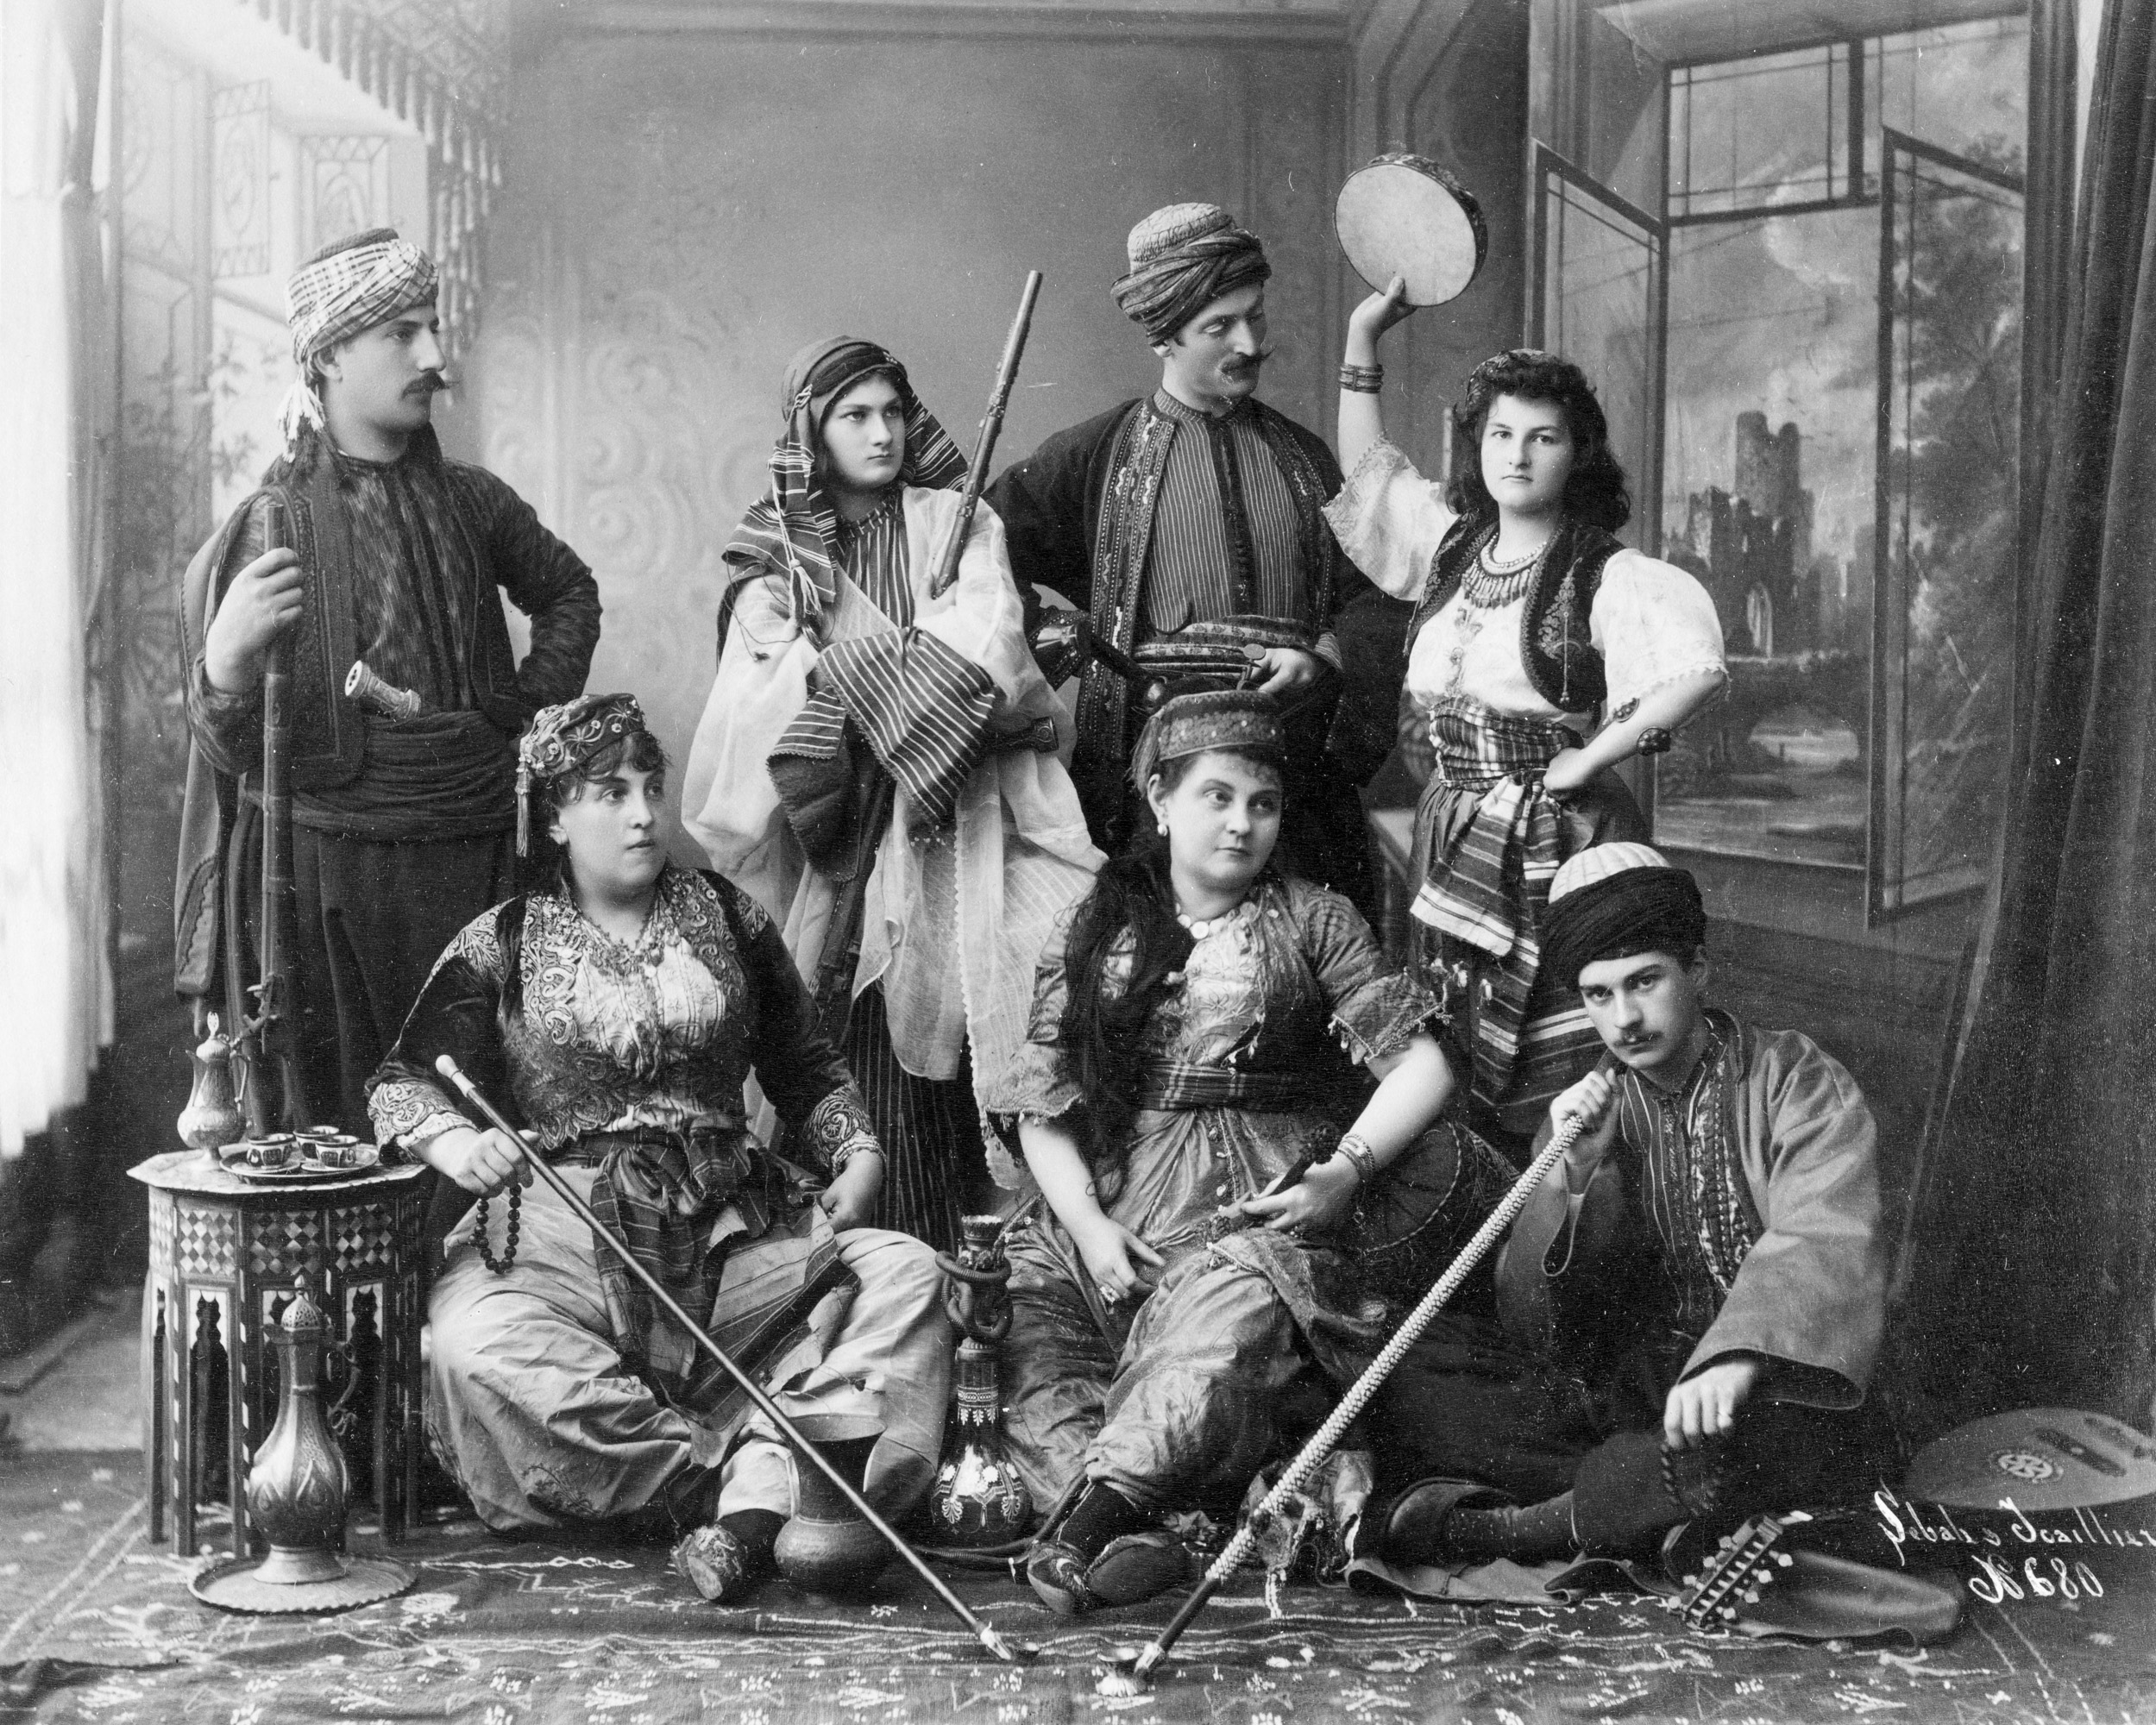 Osmanlı giysili kadın ve erkekler